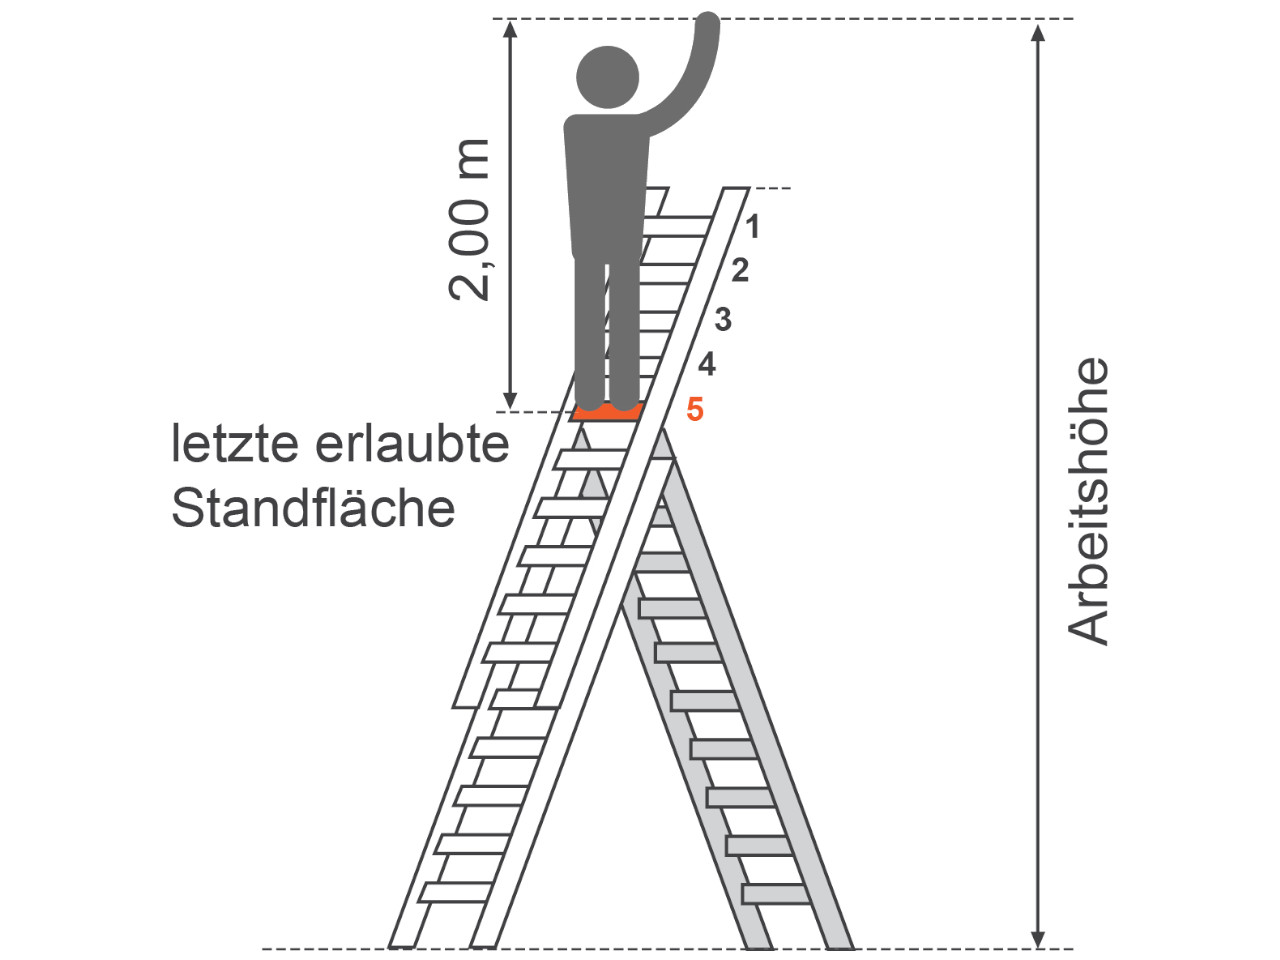 piktogramm der standhoehe und arbeitshoehe bei einer mehrzweckleiter - angabe der letzten begehbaren sprosse oder stufe